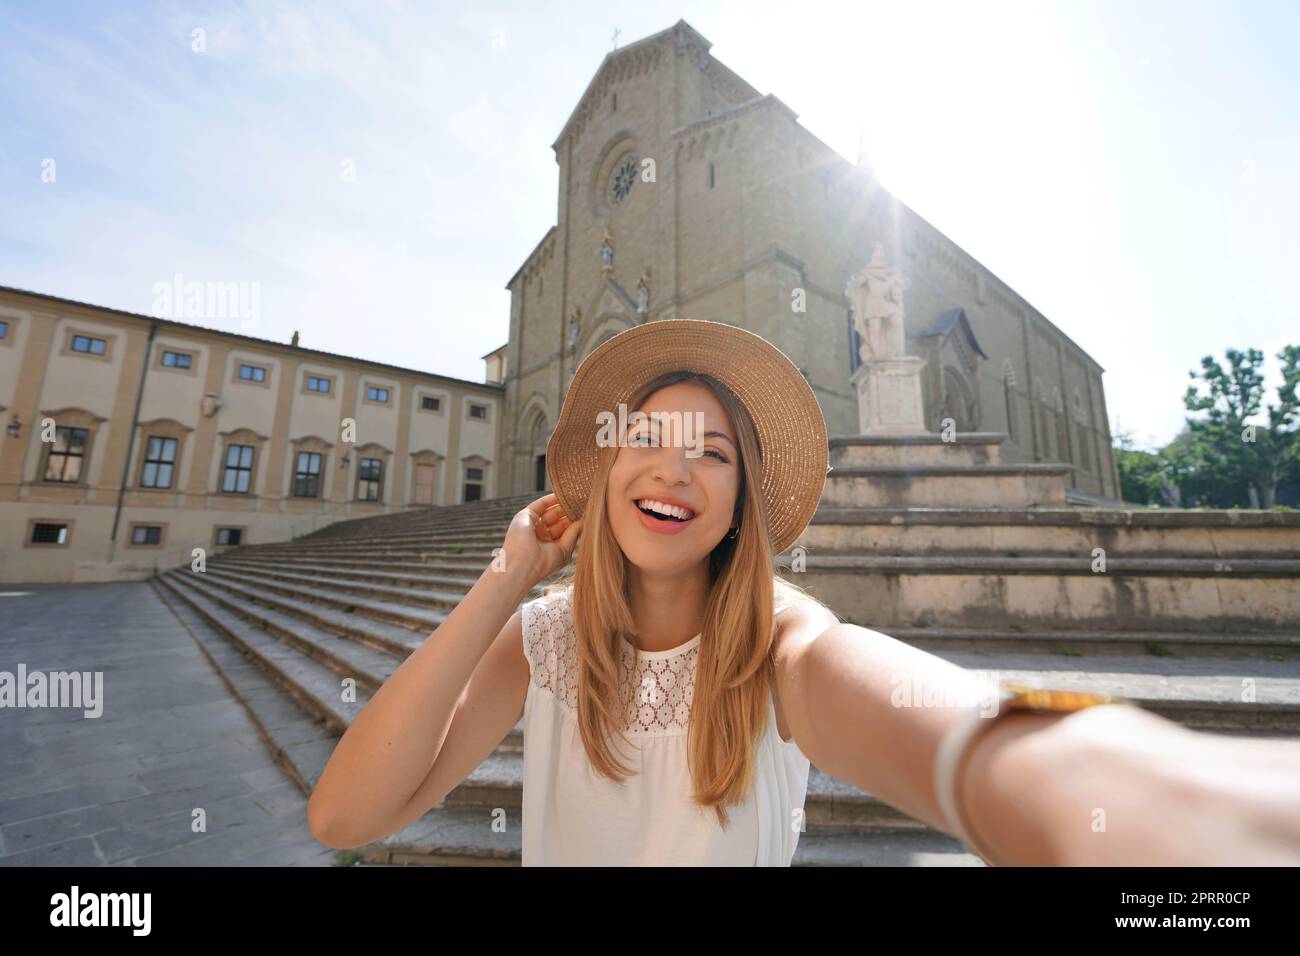 Selbstporträt der Reisenden Mädchen auf der Piazza Duomo, Arezzo, Toskana, Italien Stockfoto